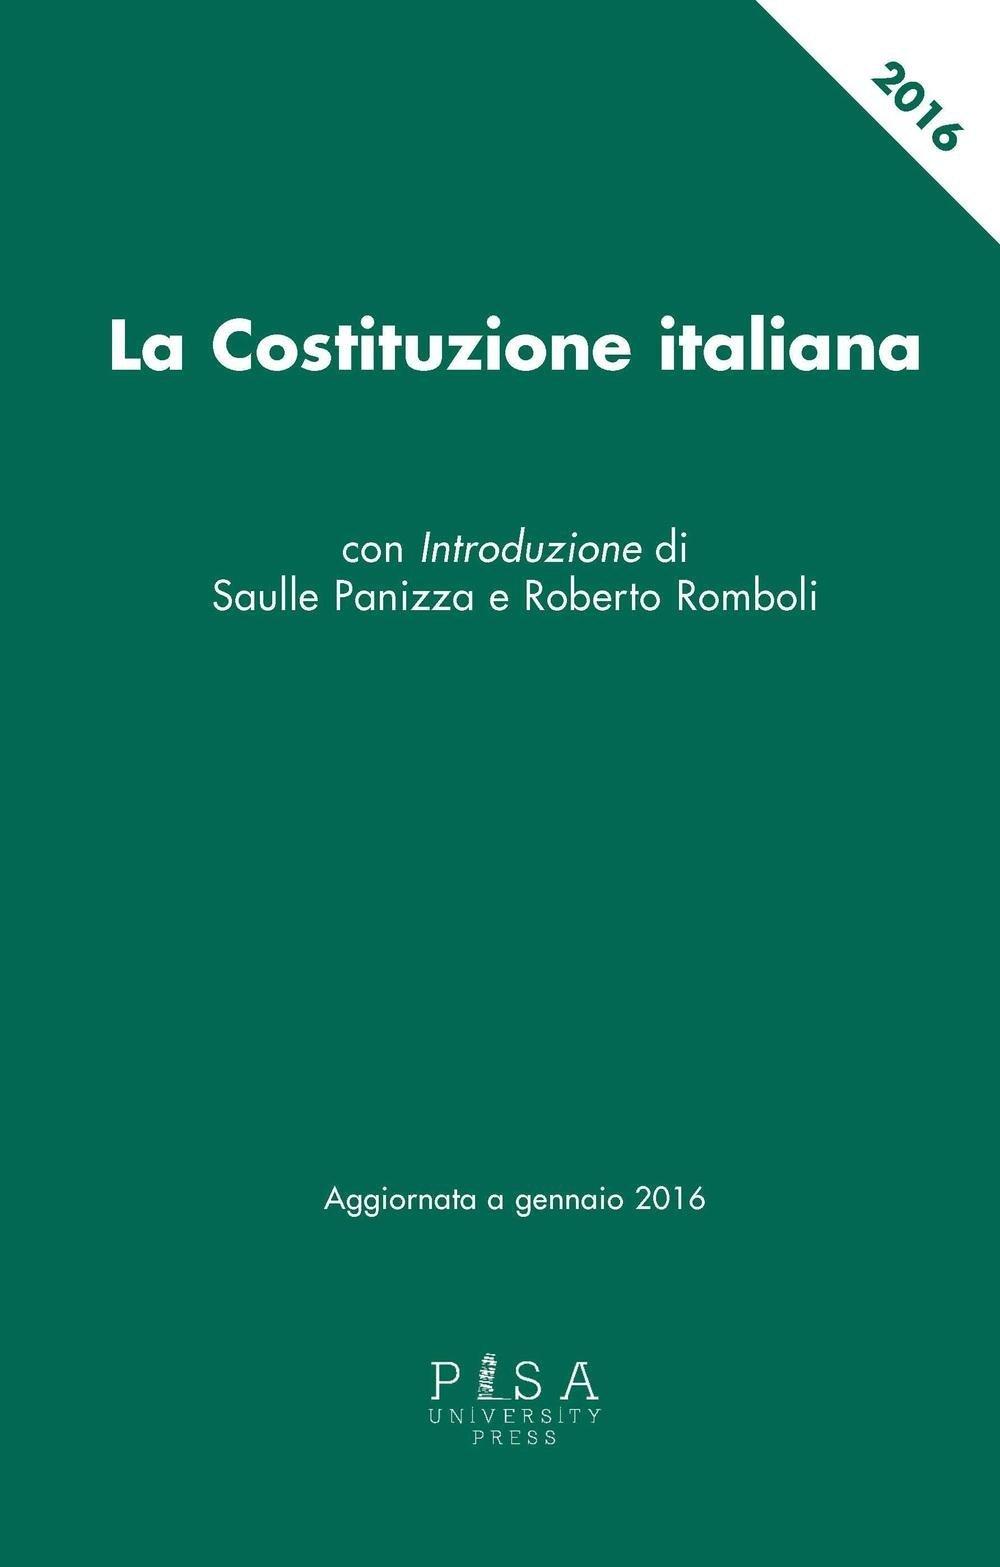 La Costituzione italiana aggiornata a gennaio 2016 Con Introduzione di Saulle Panizza e Roberto Romboli. Il trono di spade.